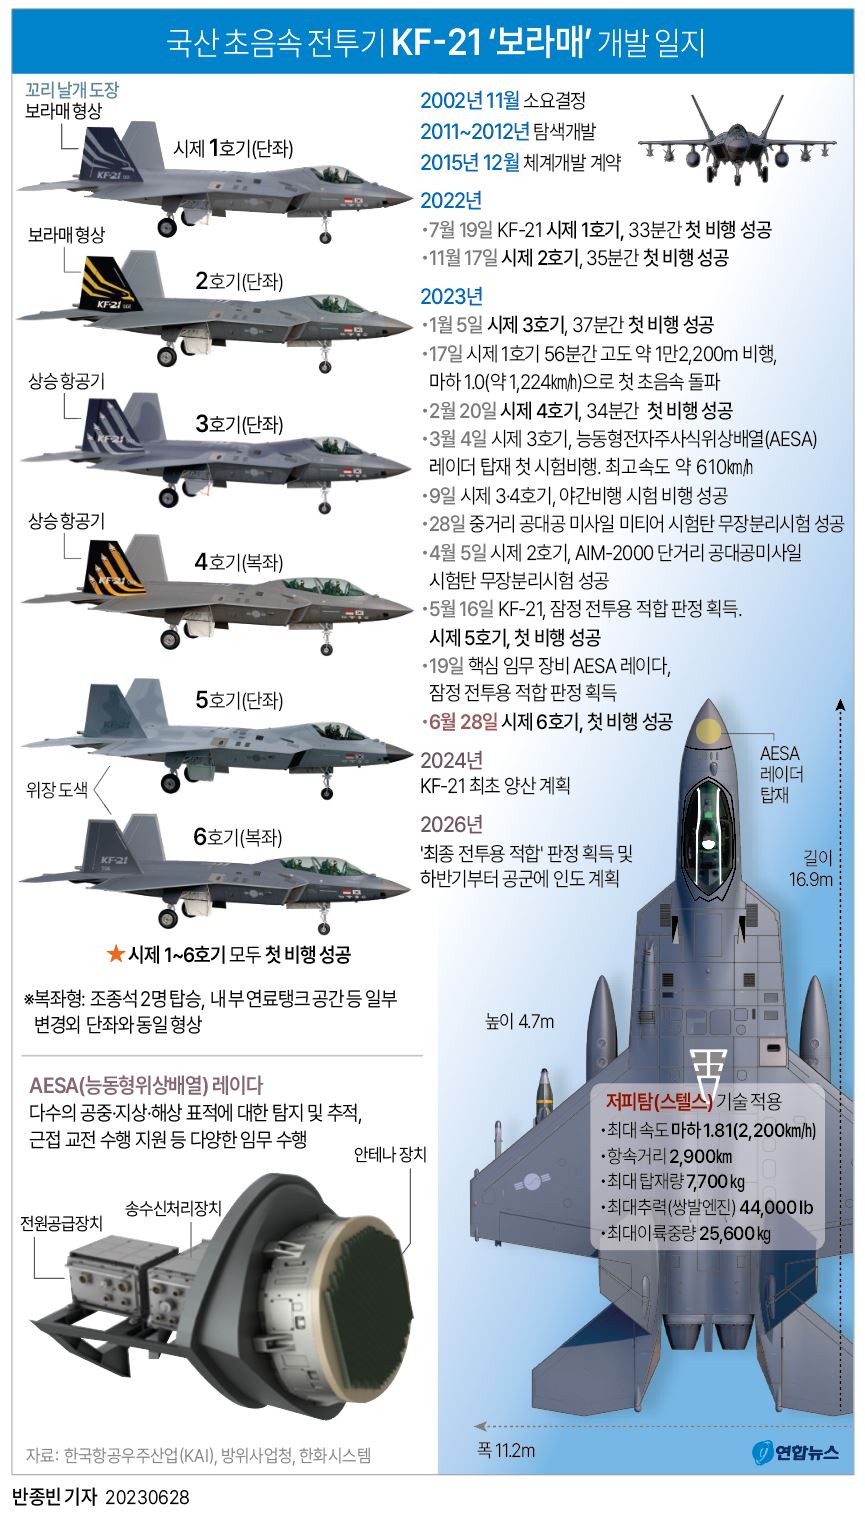 [그래픽] 국산 초음속 전투기 KF-21 '보라매' 개발 일지